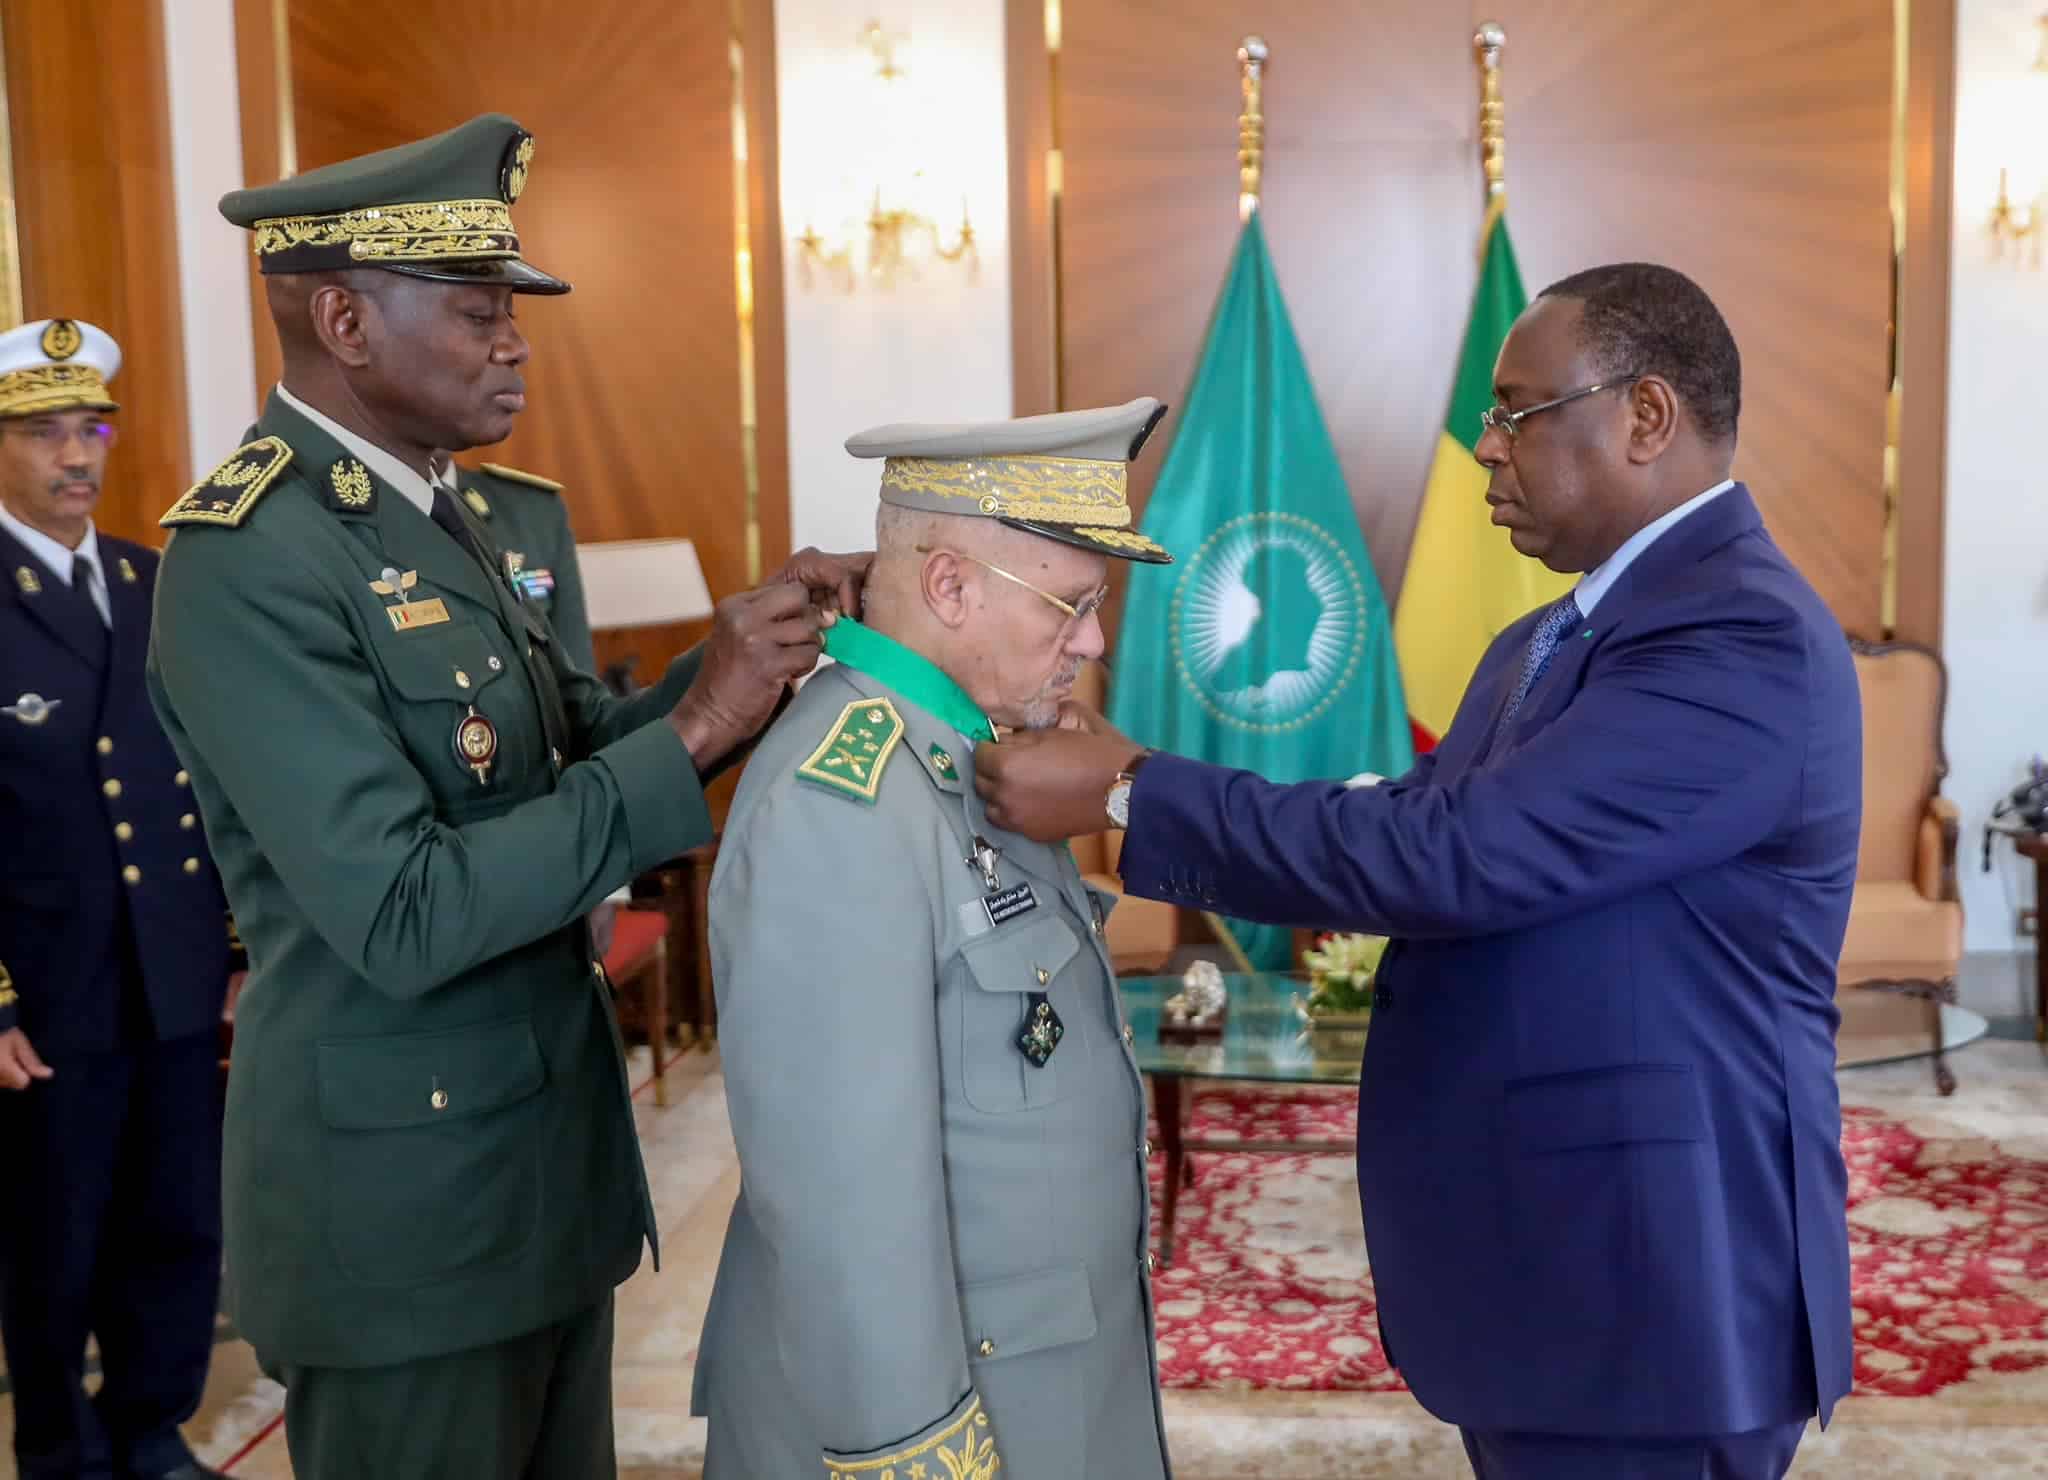 Palais : Le Chef d’état-major général des forces armées mauritaniennes décoré à la médaille de Commandeur de l'Ordre National du Lion décoré